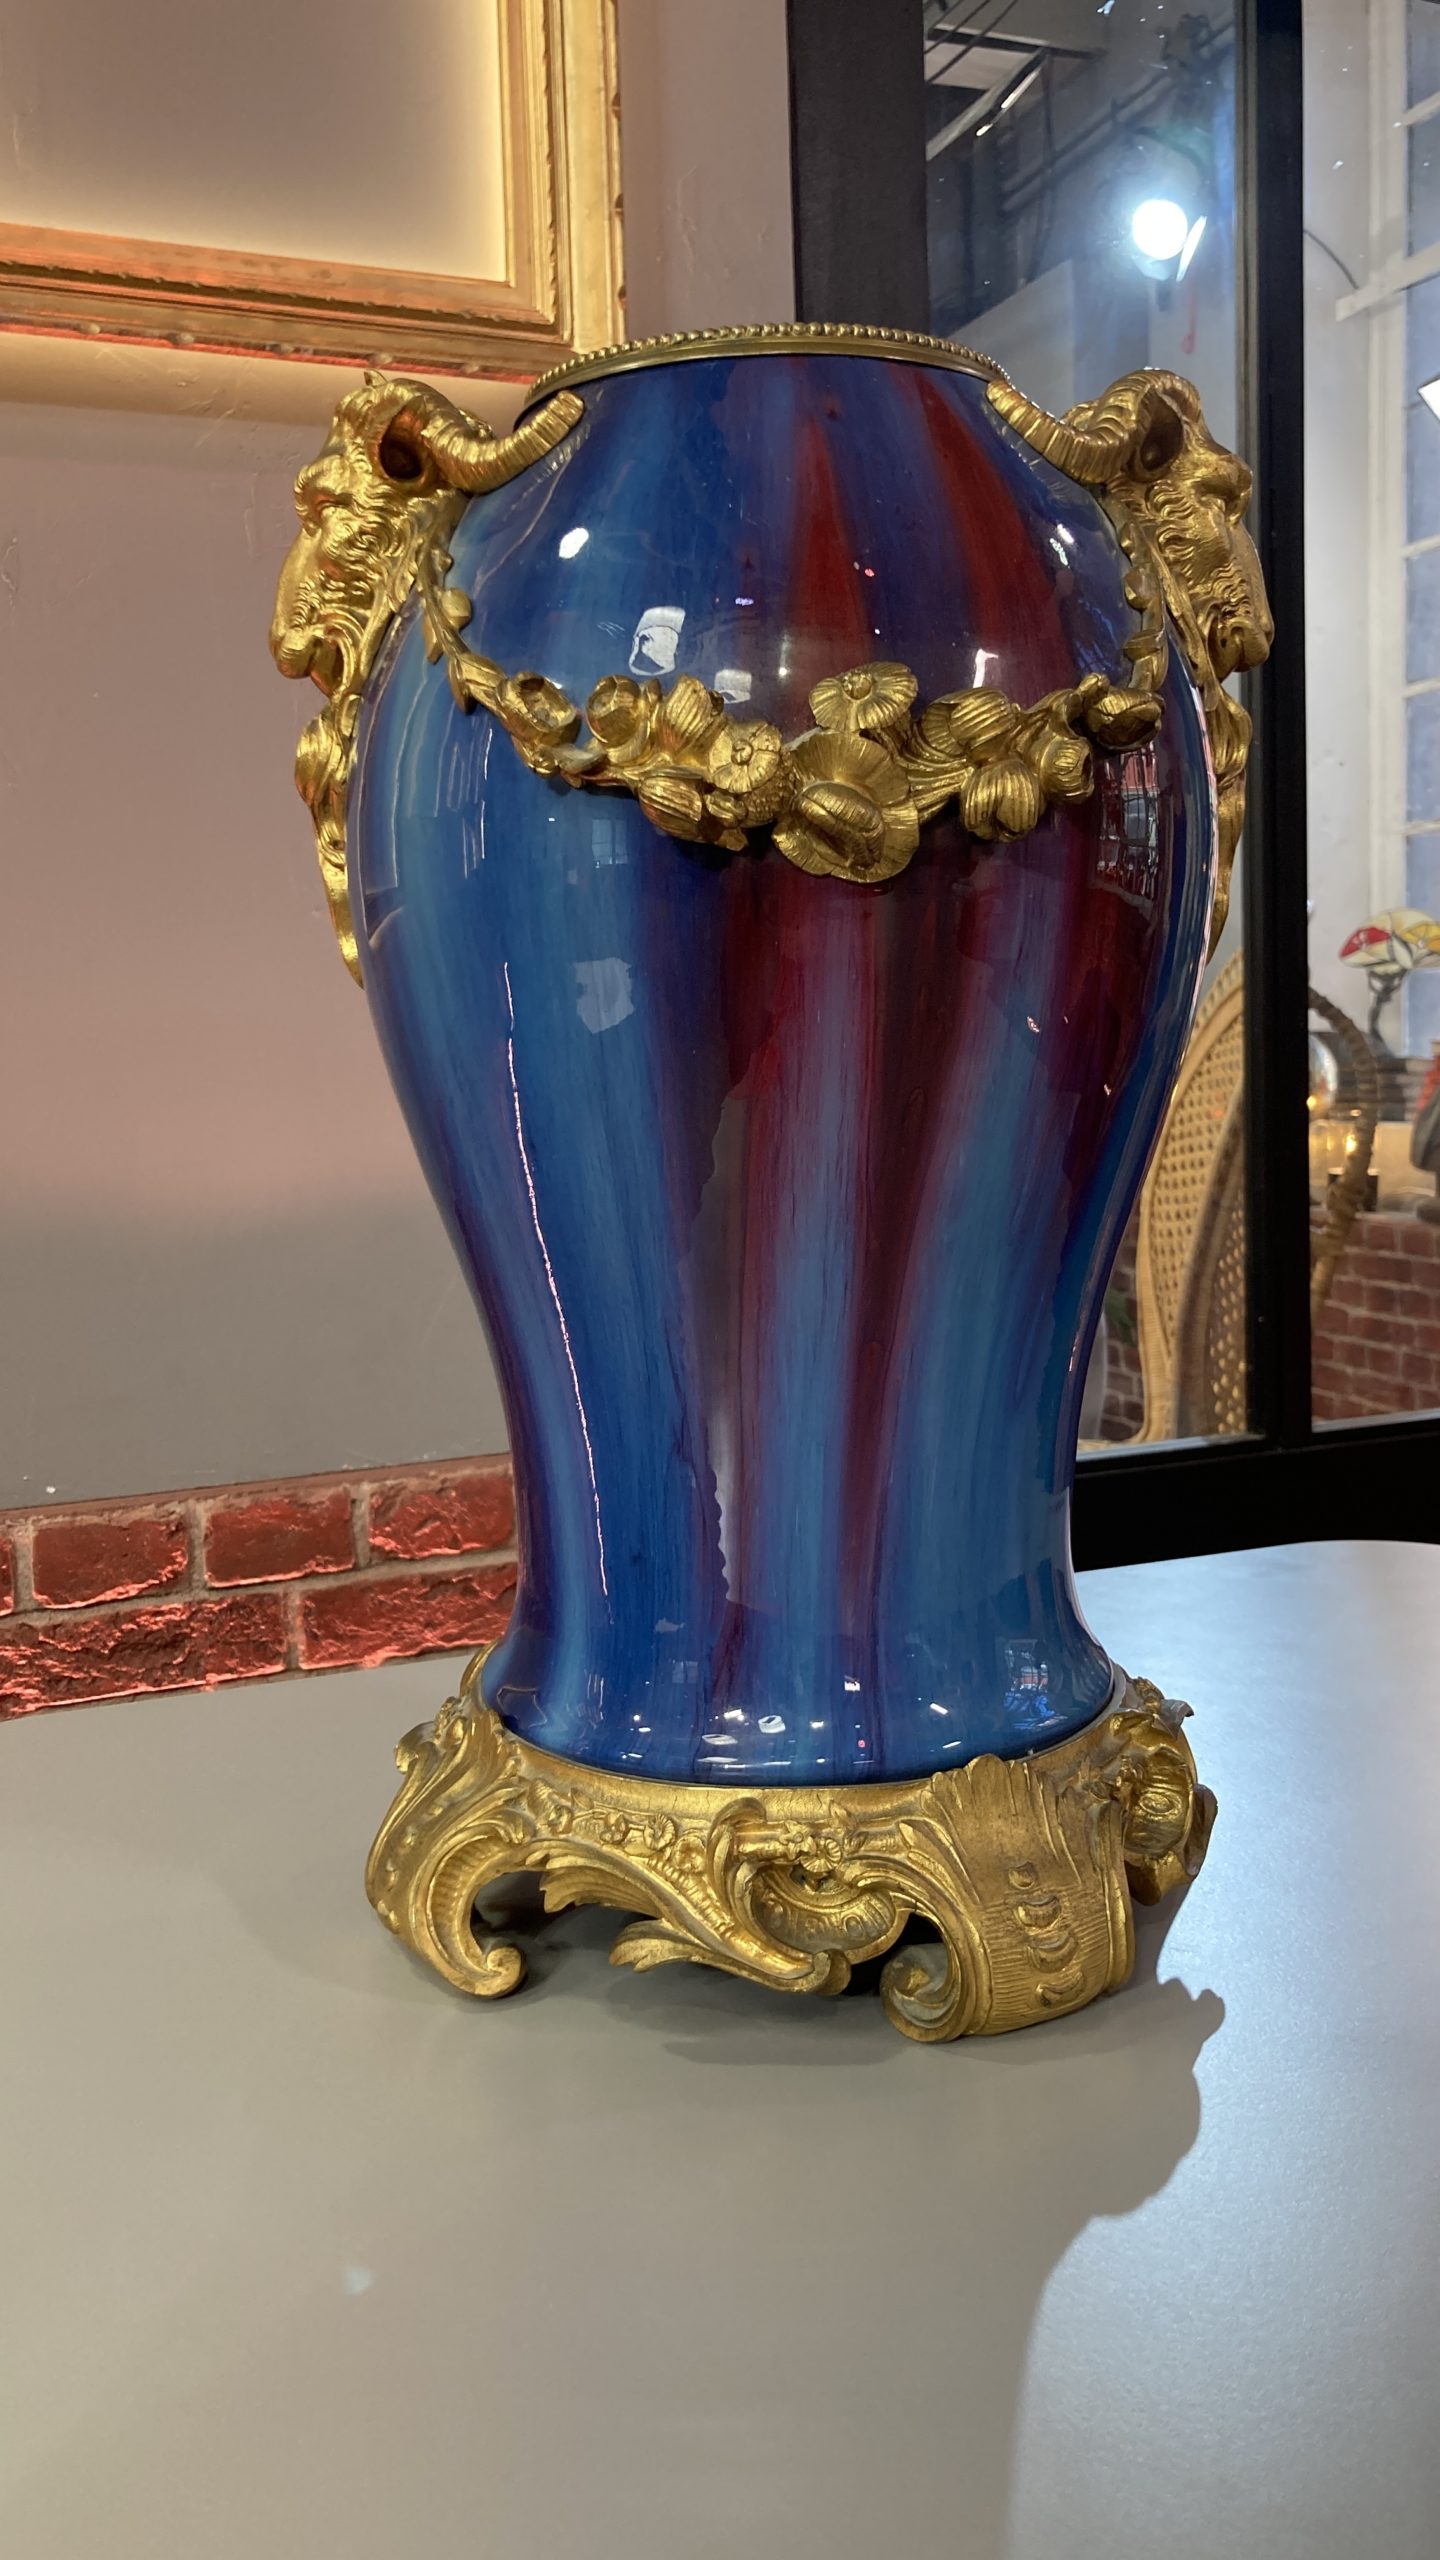 vase-cérémique-bleu-rouge-bronze-eugène-baudin-wolf-louis-XVI-aurore-morisse-antiquaire-décoration-antiquité-objet-ancien-liège-paris-affaire-conclue-marchad-art-antiques2